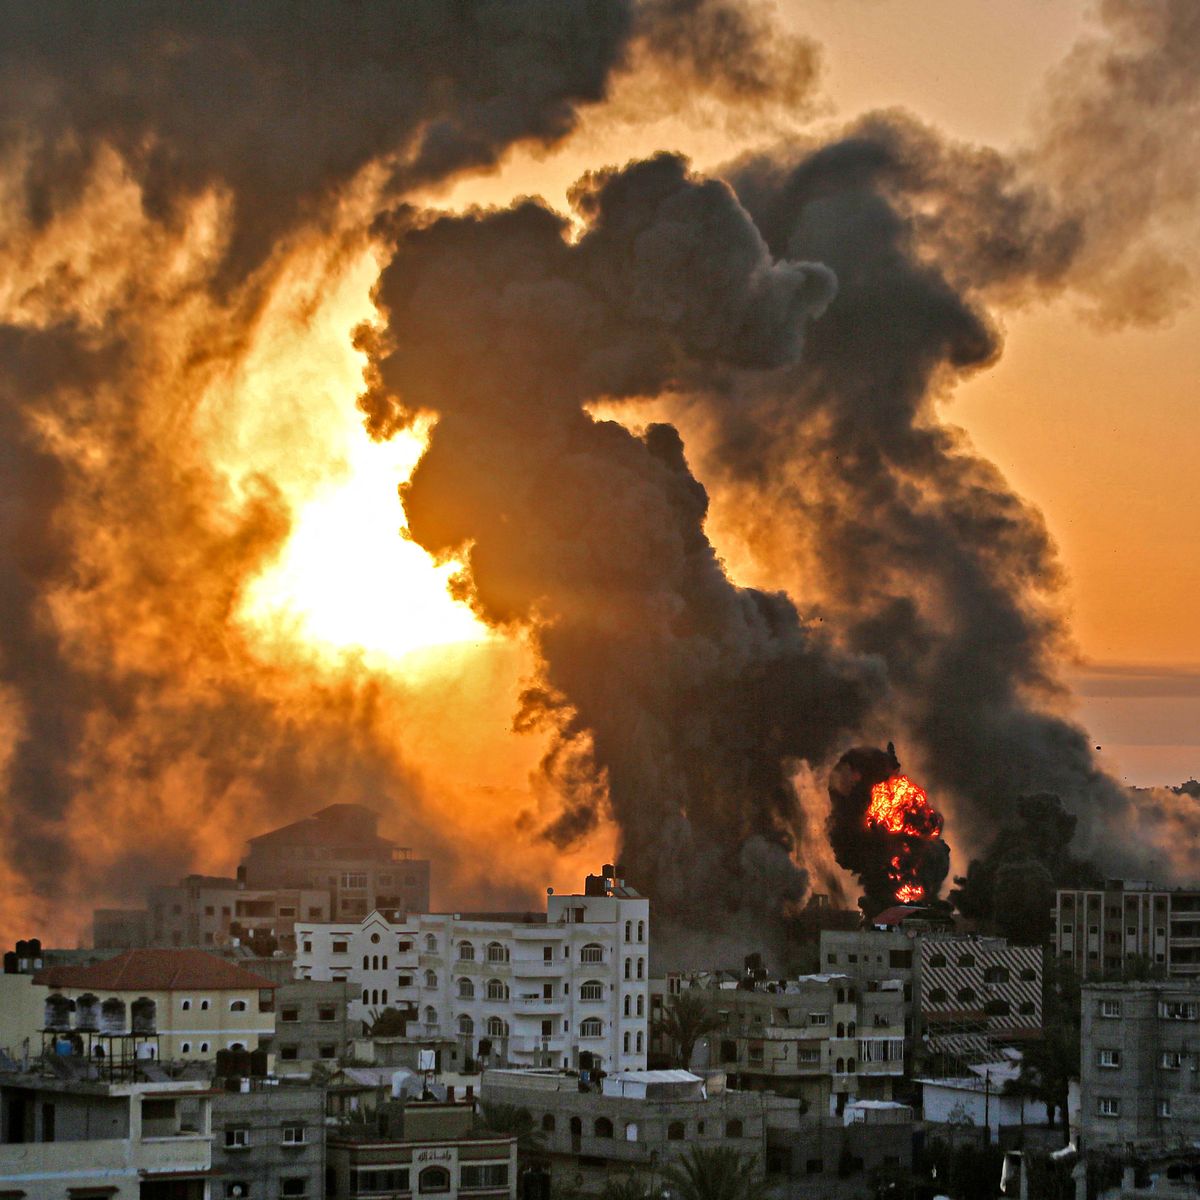 Raporti: Izraelitët dhe palestinezët kryen krime lufte gjatë sulmeve të majit